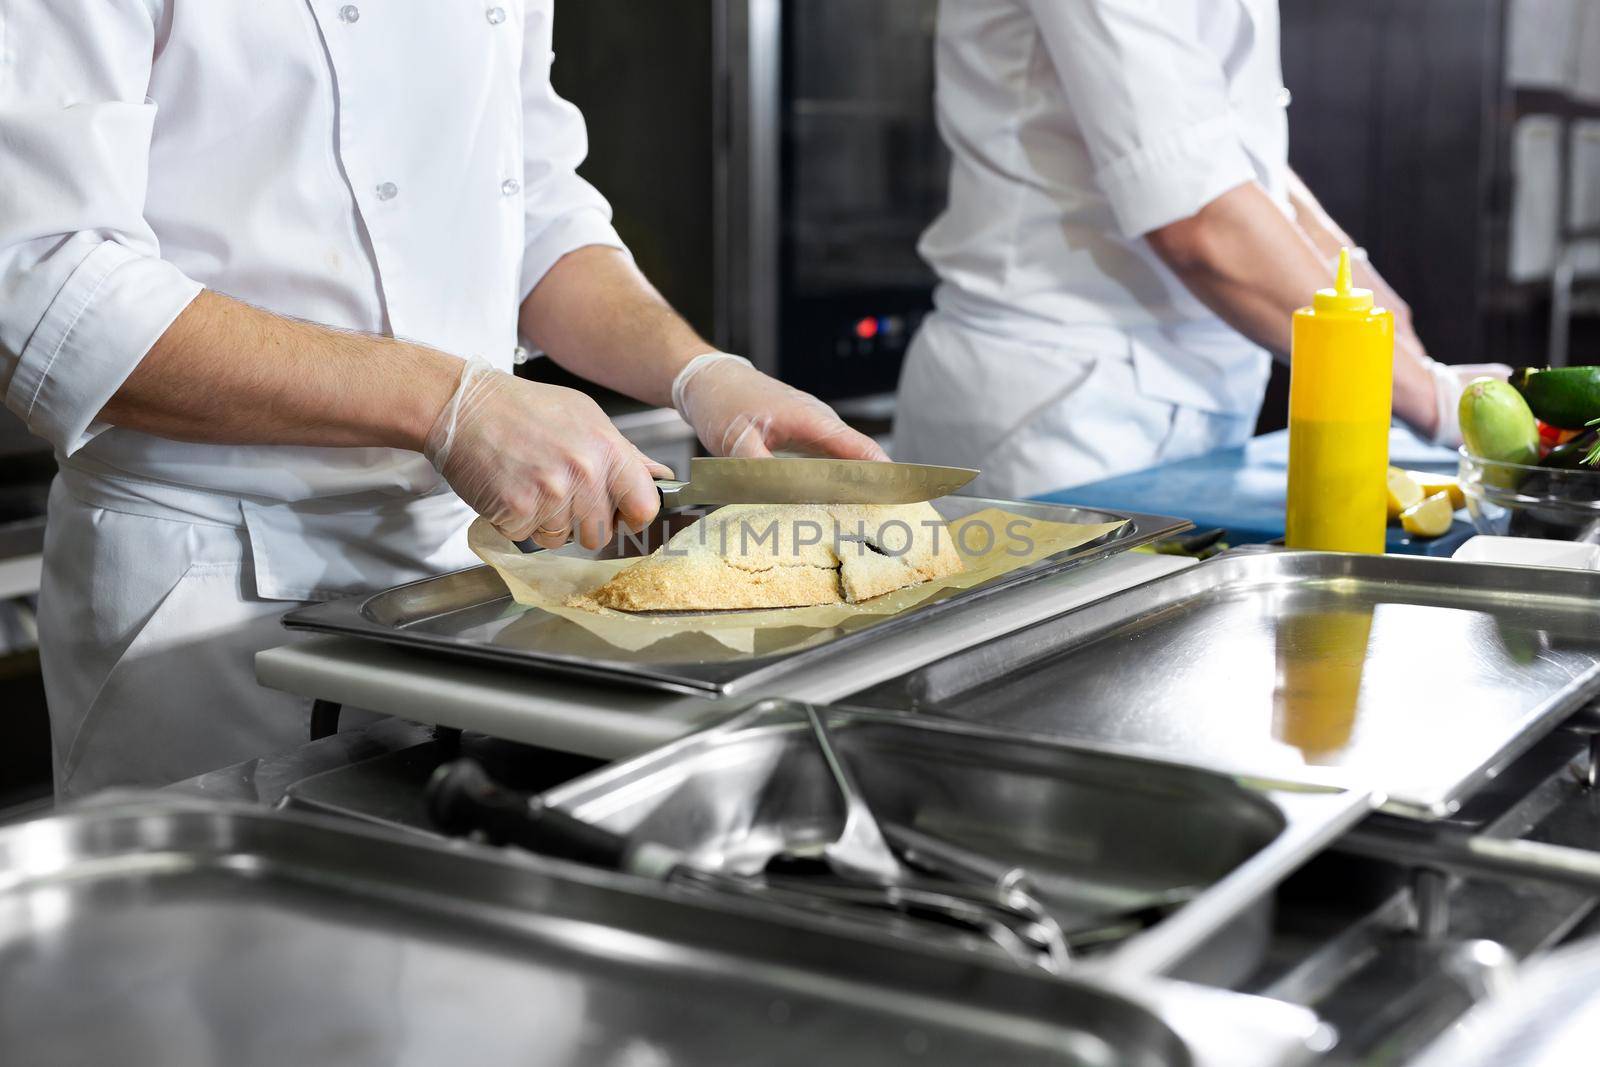 Chefs prepare delicious dishes in the kitchen.